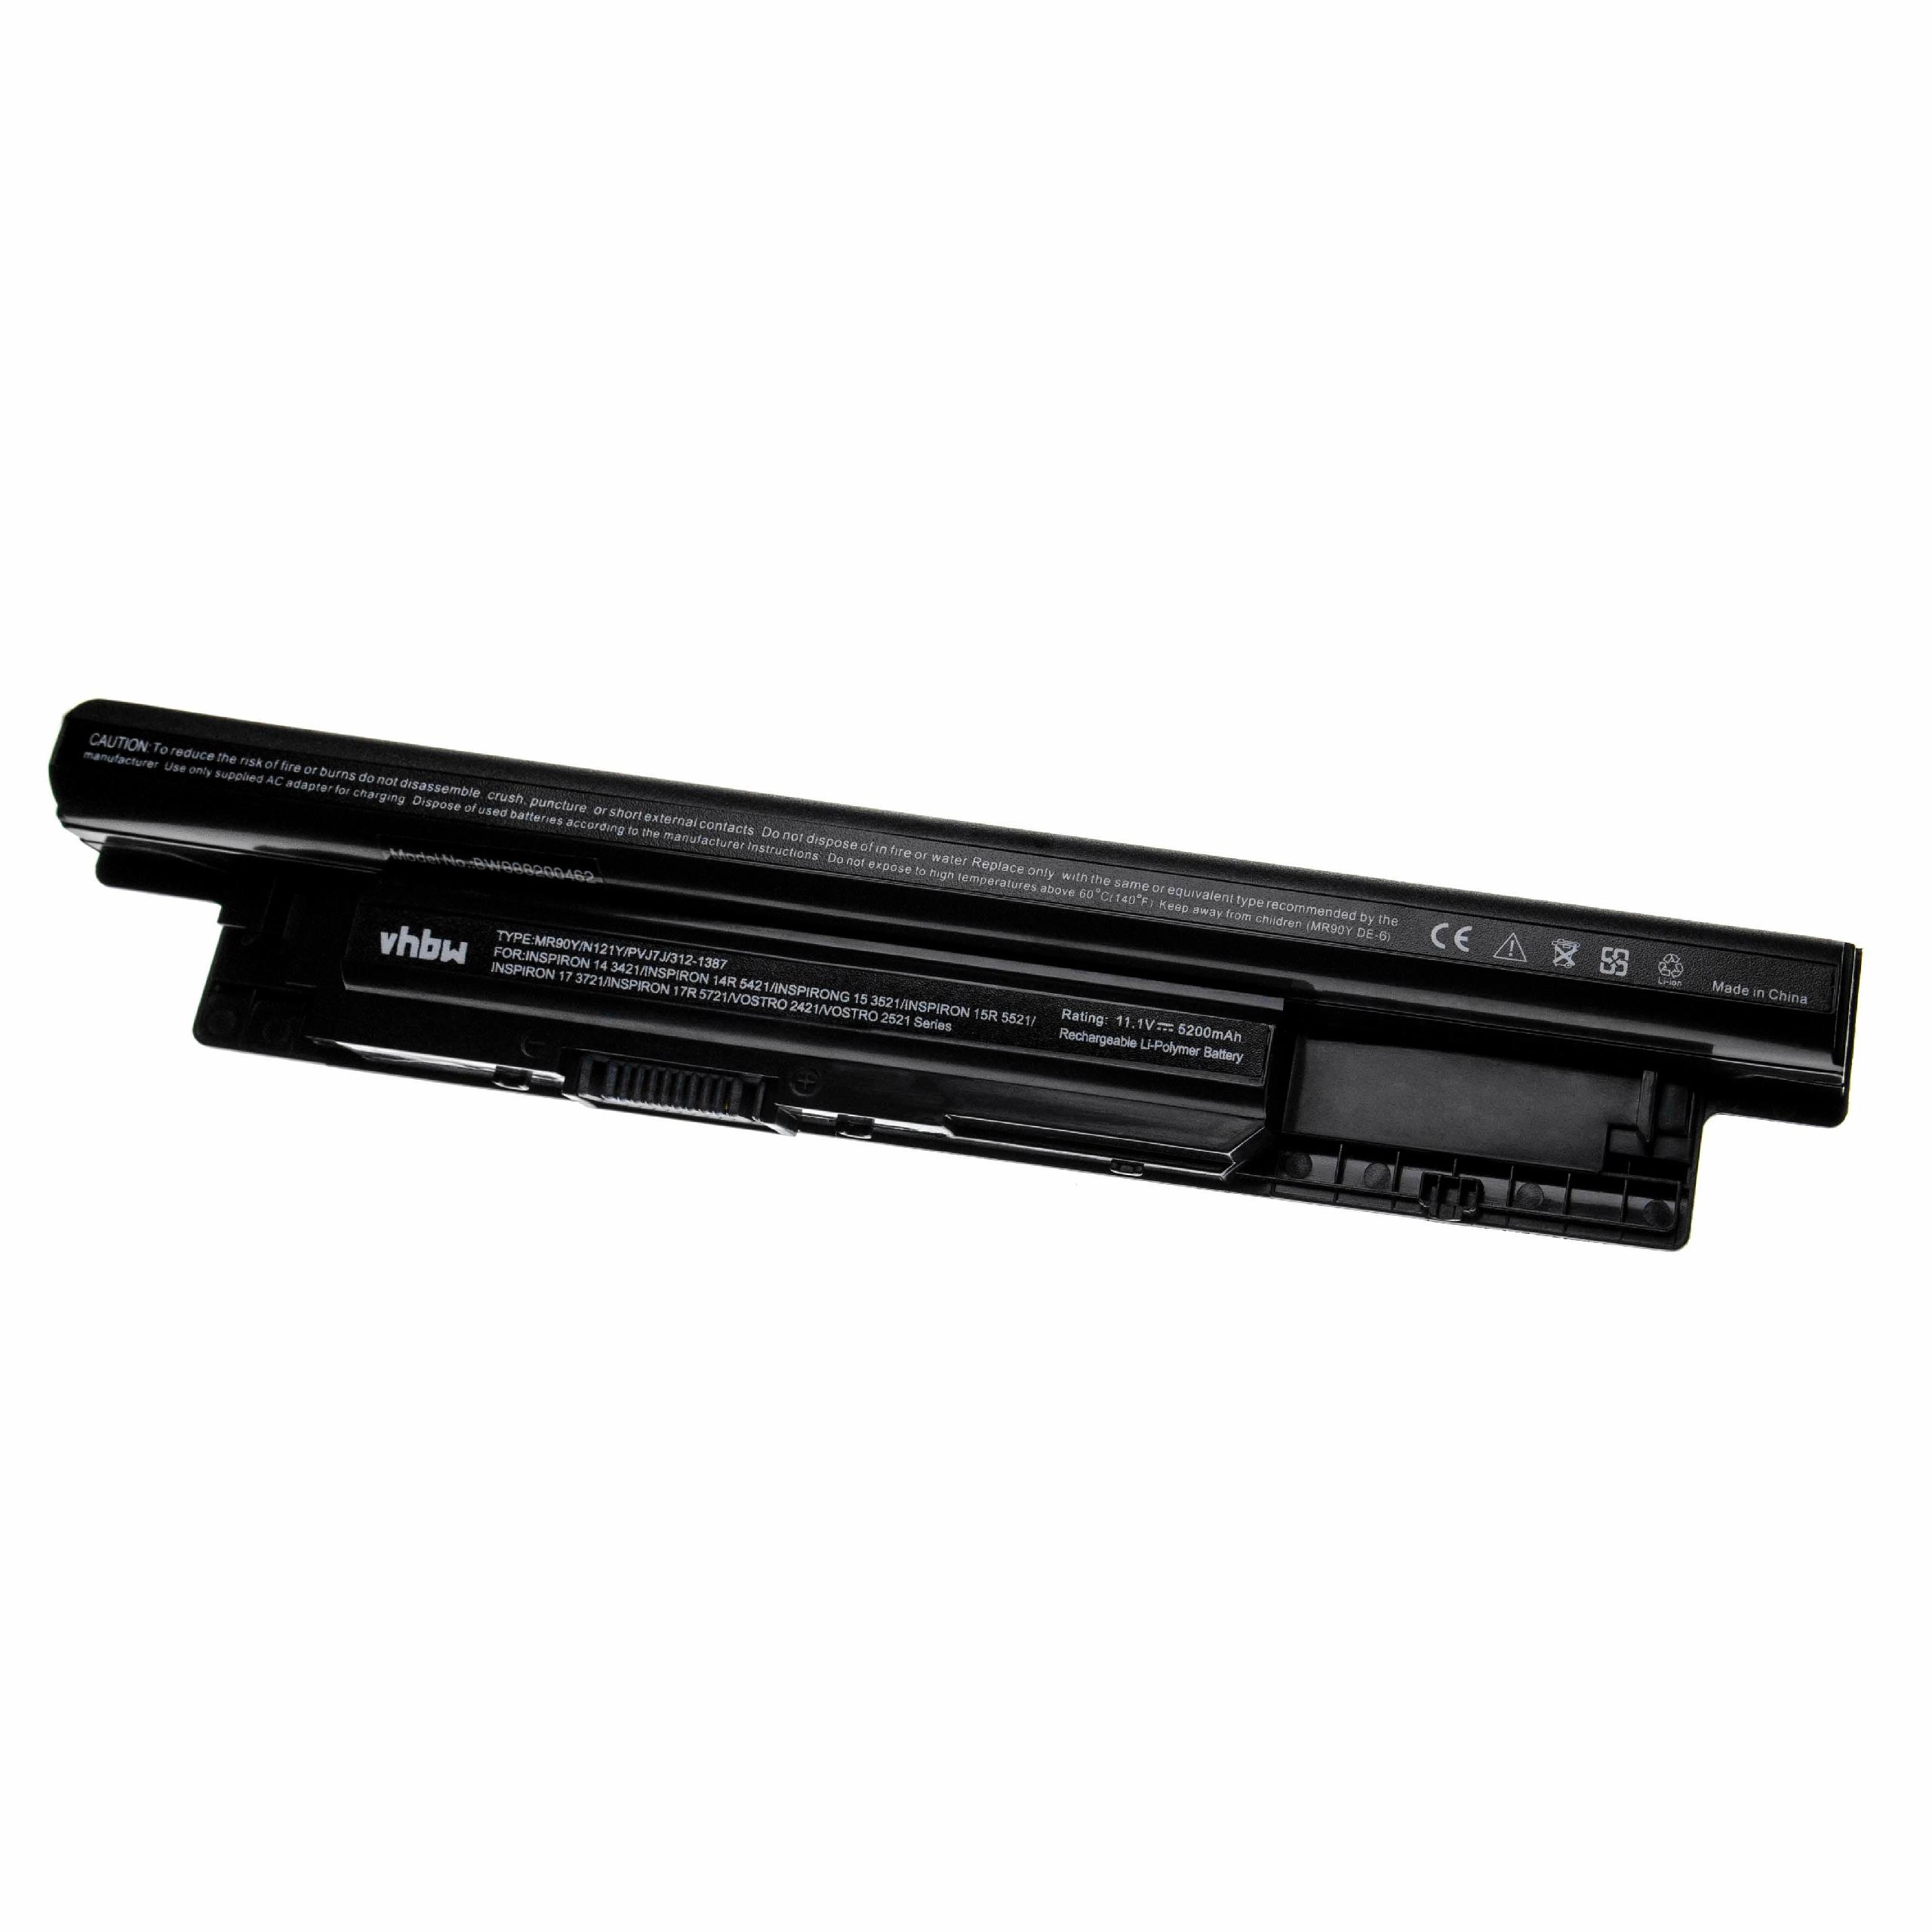 Batería reemplaza Dell 312-1387, 24DRM, 0MF69, 312-1390 para notebook Dell - 5200 mAh 11,1 V Li-poli negro